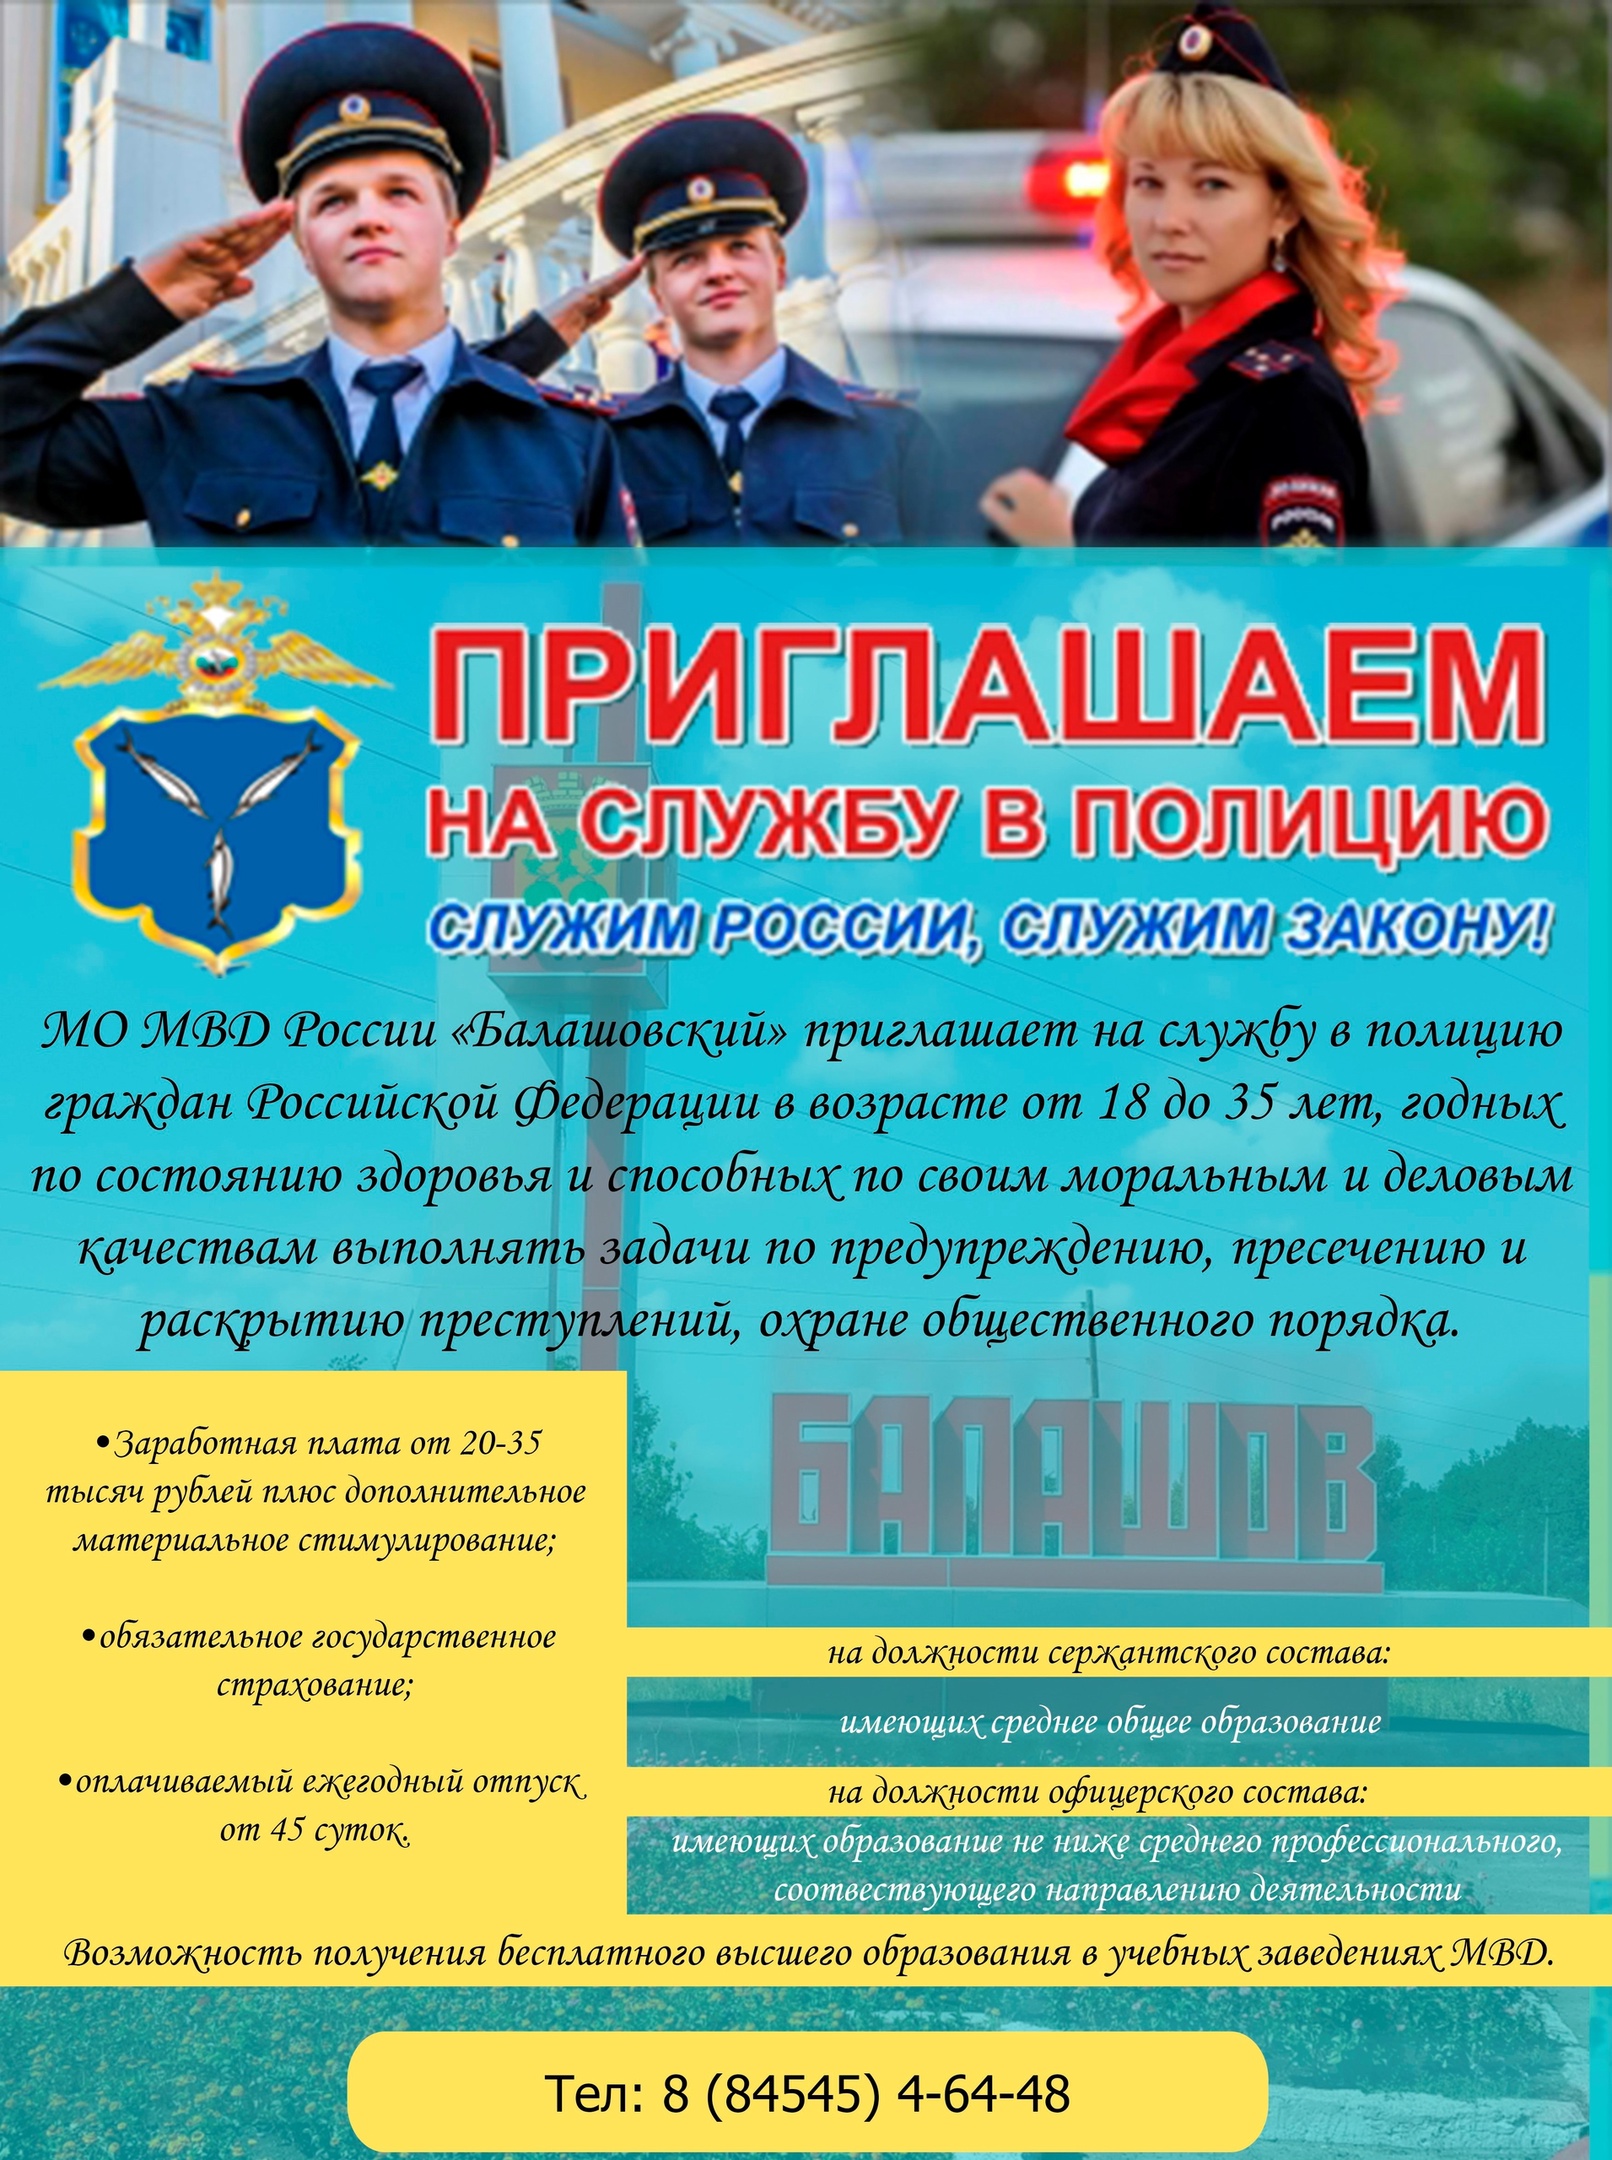 МО МВД России «Балашовский» Саратовской области приглашает на службу